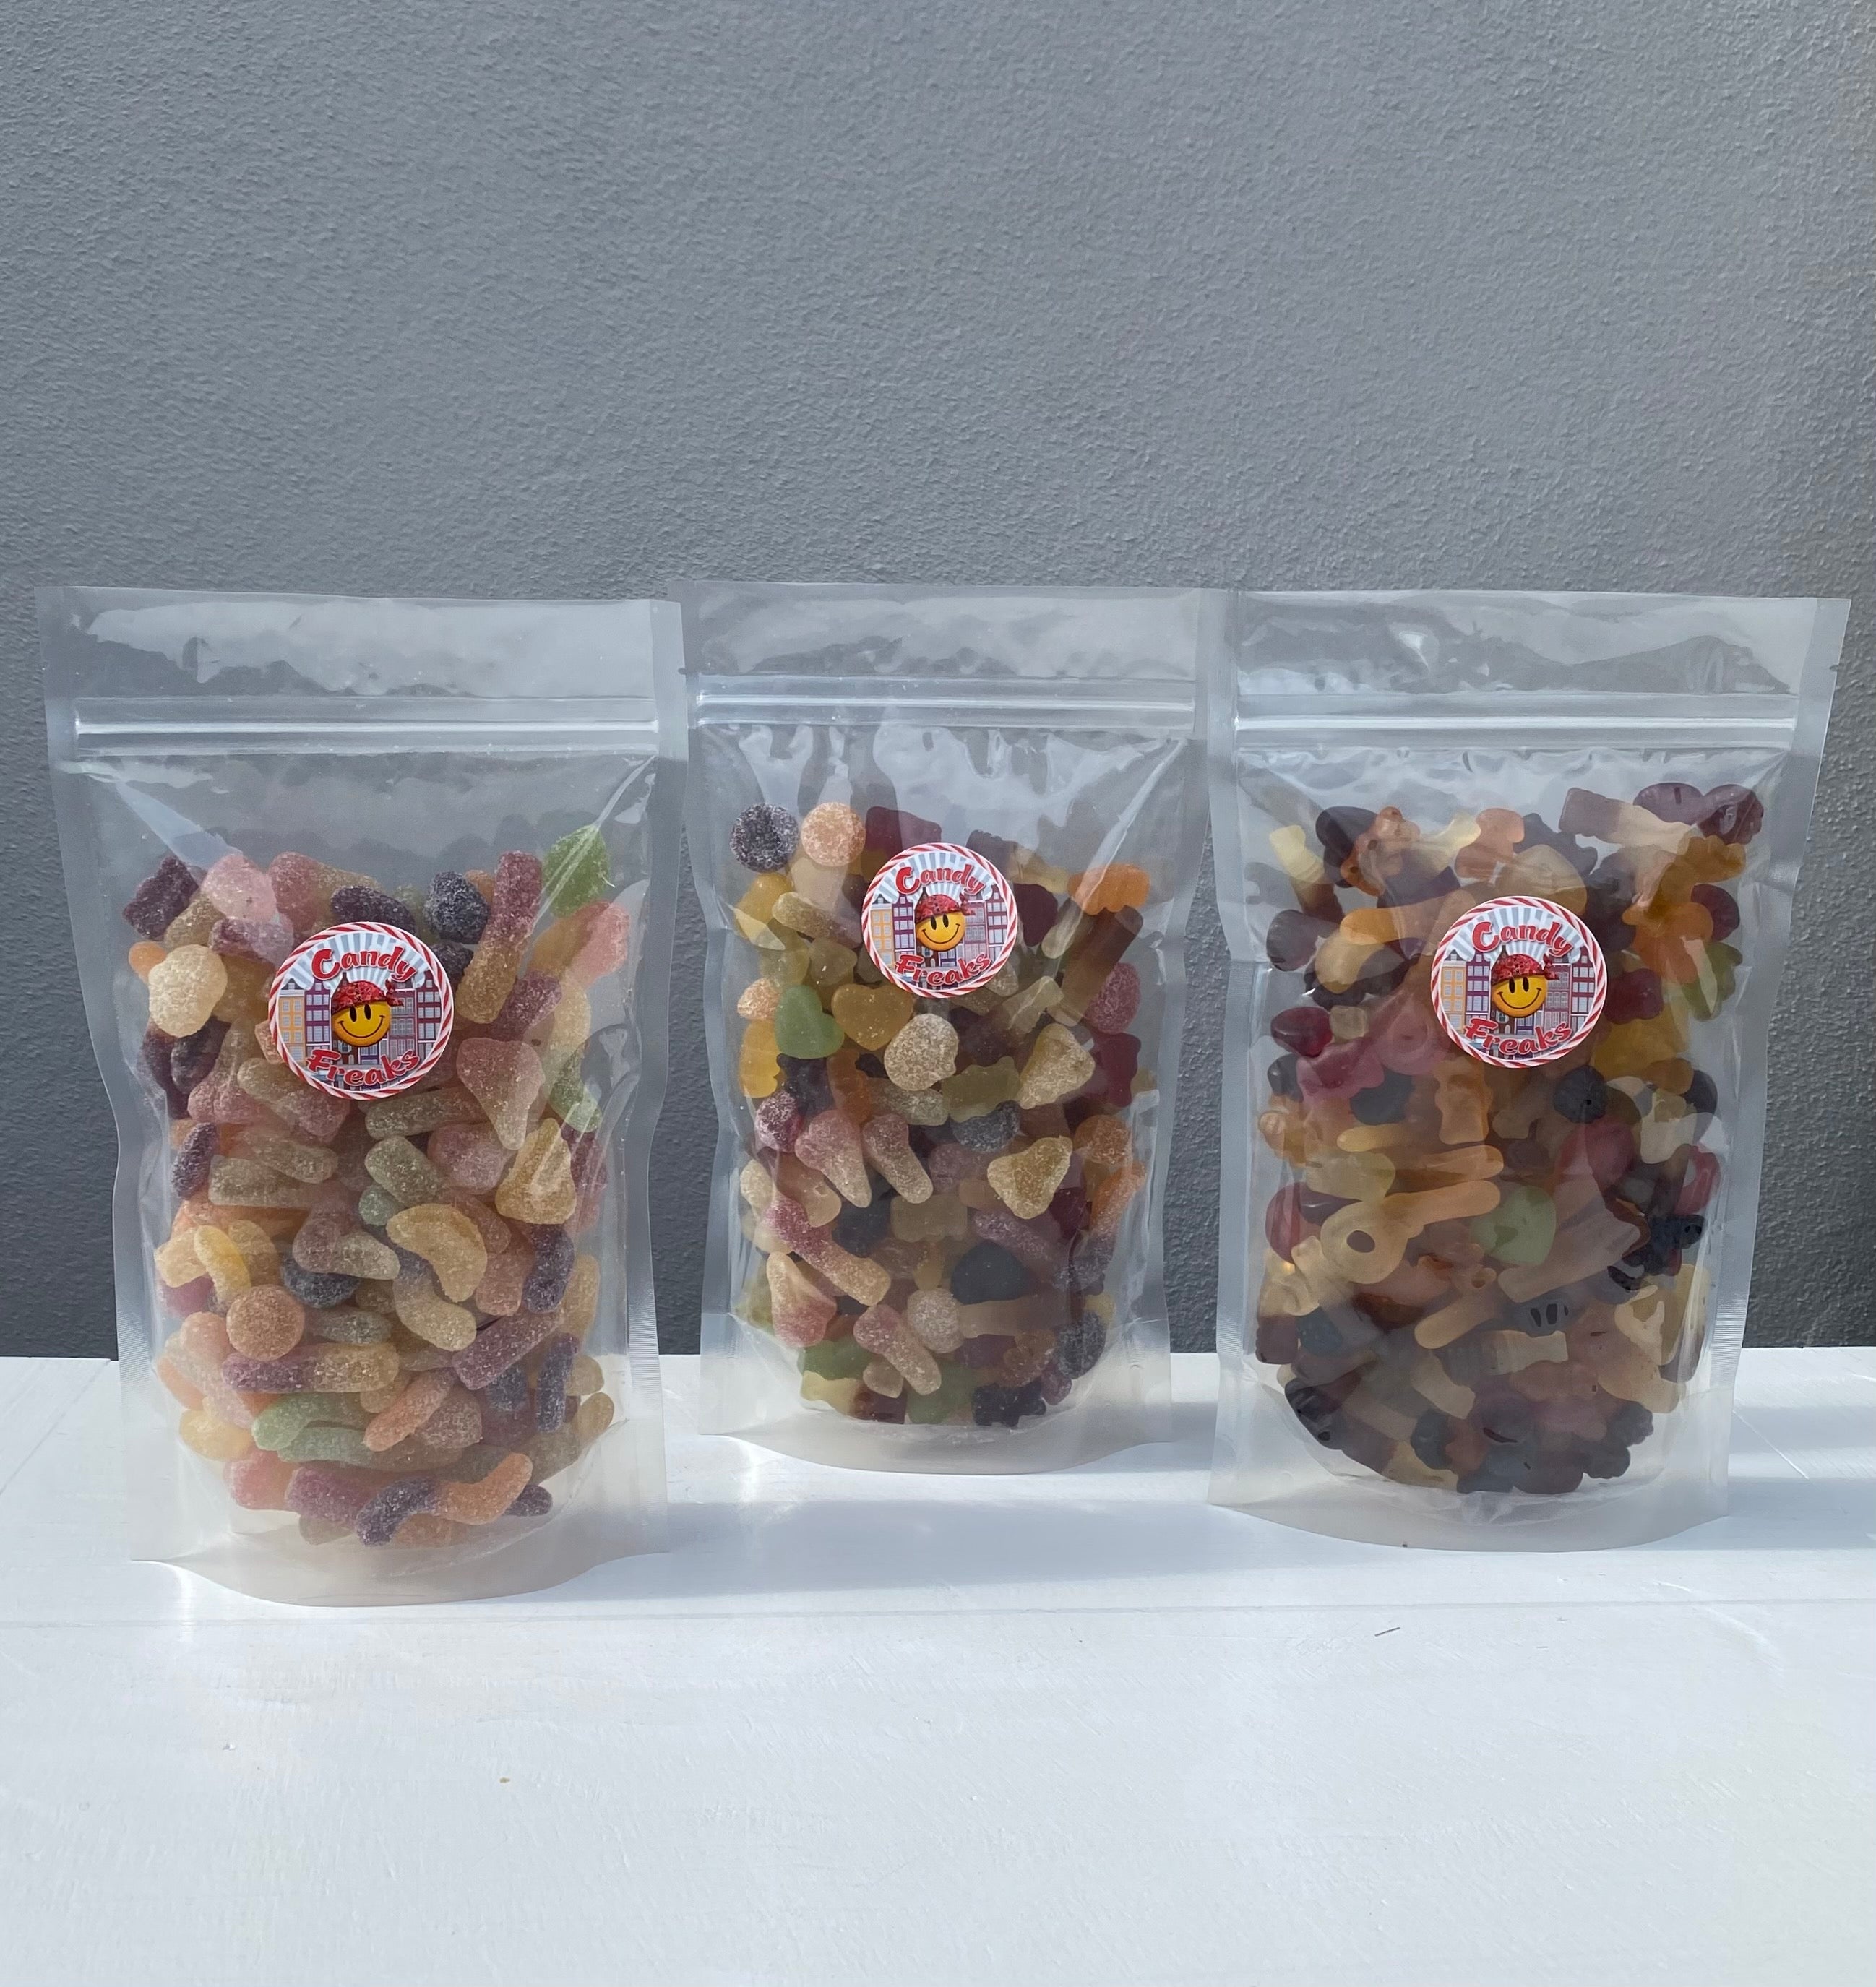 Koop de Vegan Zure Mix - Proef de Frisse Smaak van Bio Zuur Snoep bij Candy Freaks!